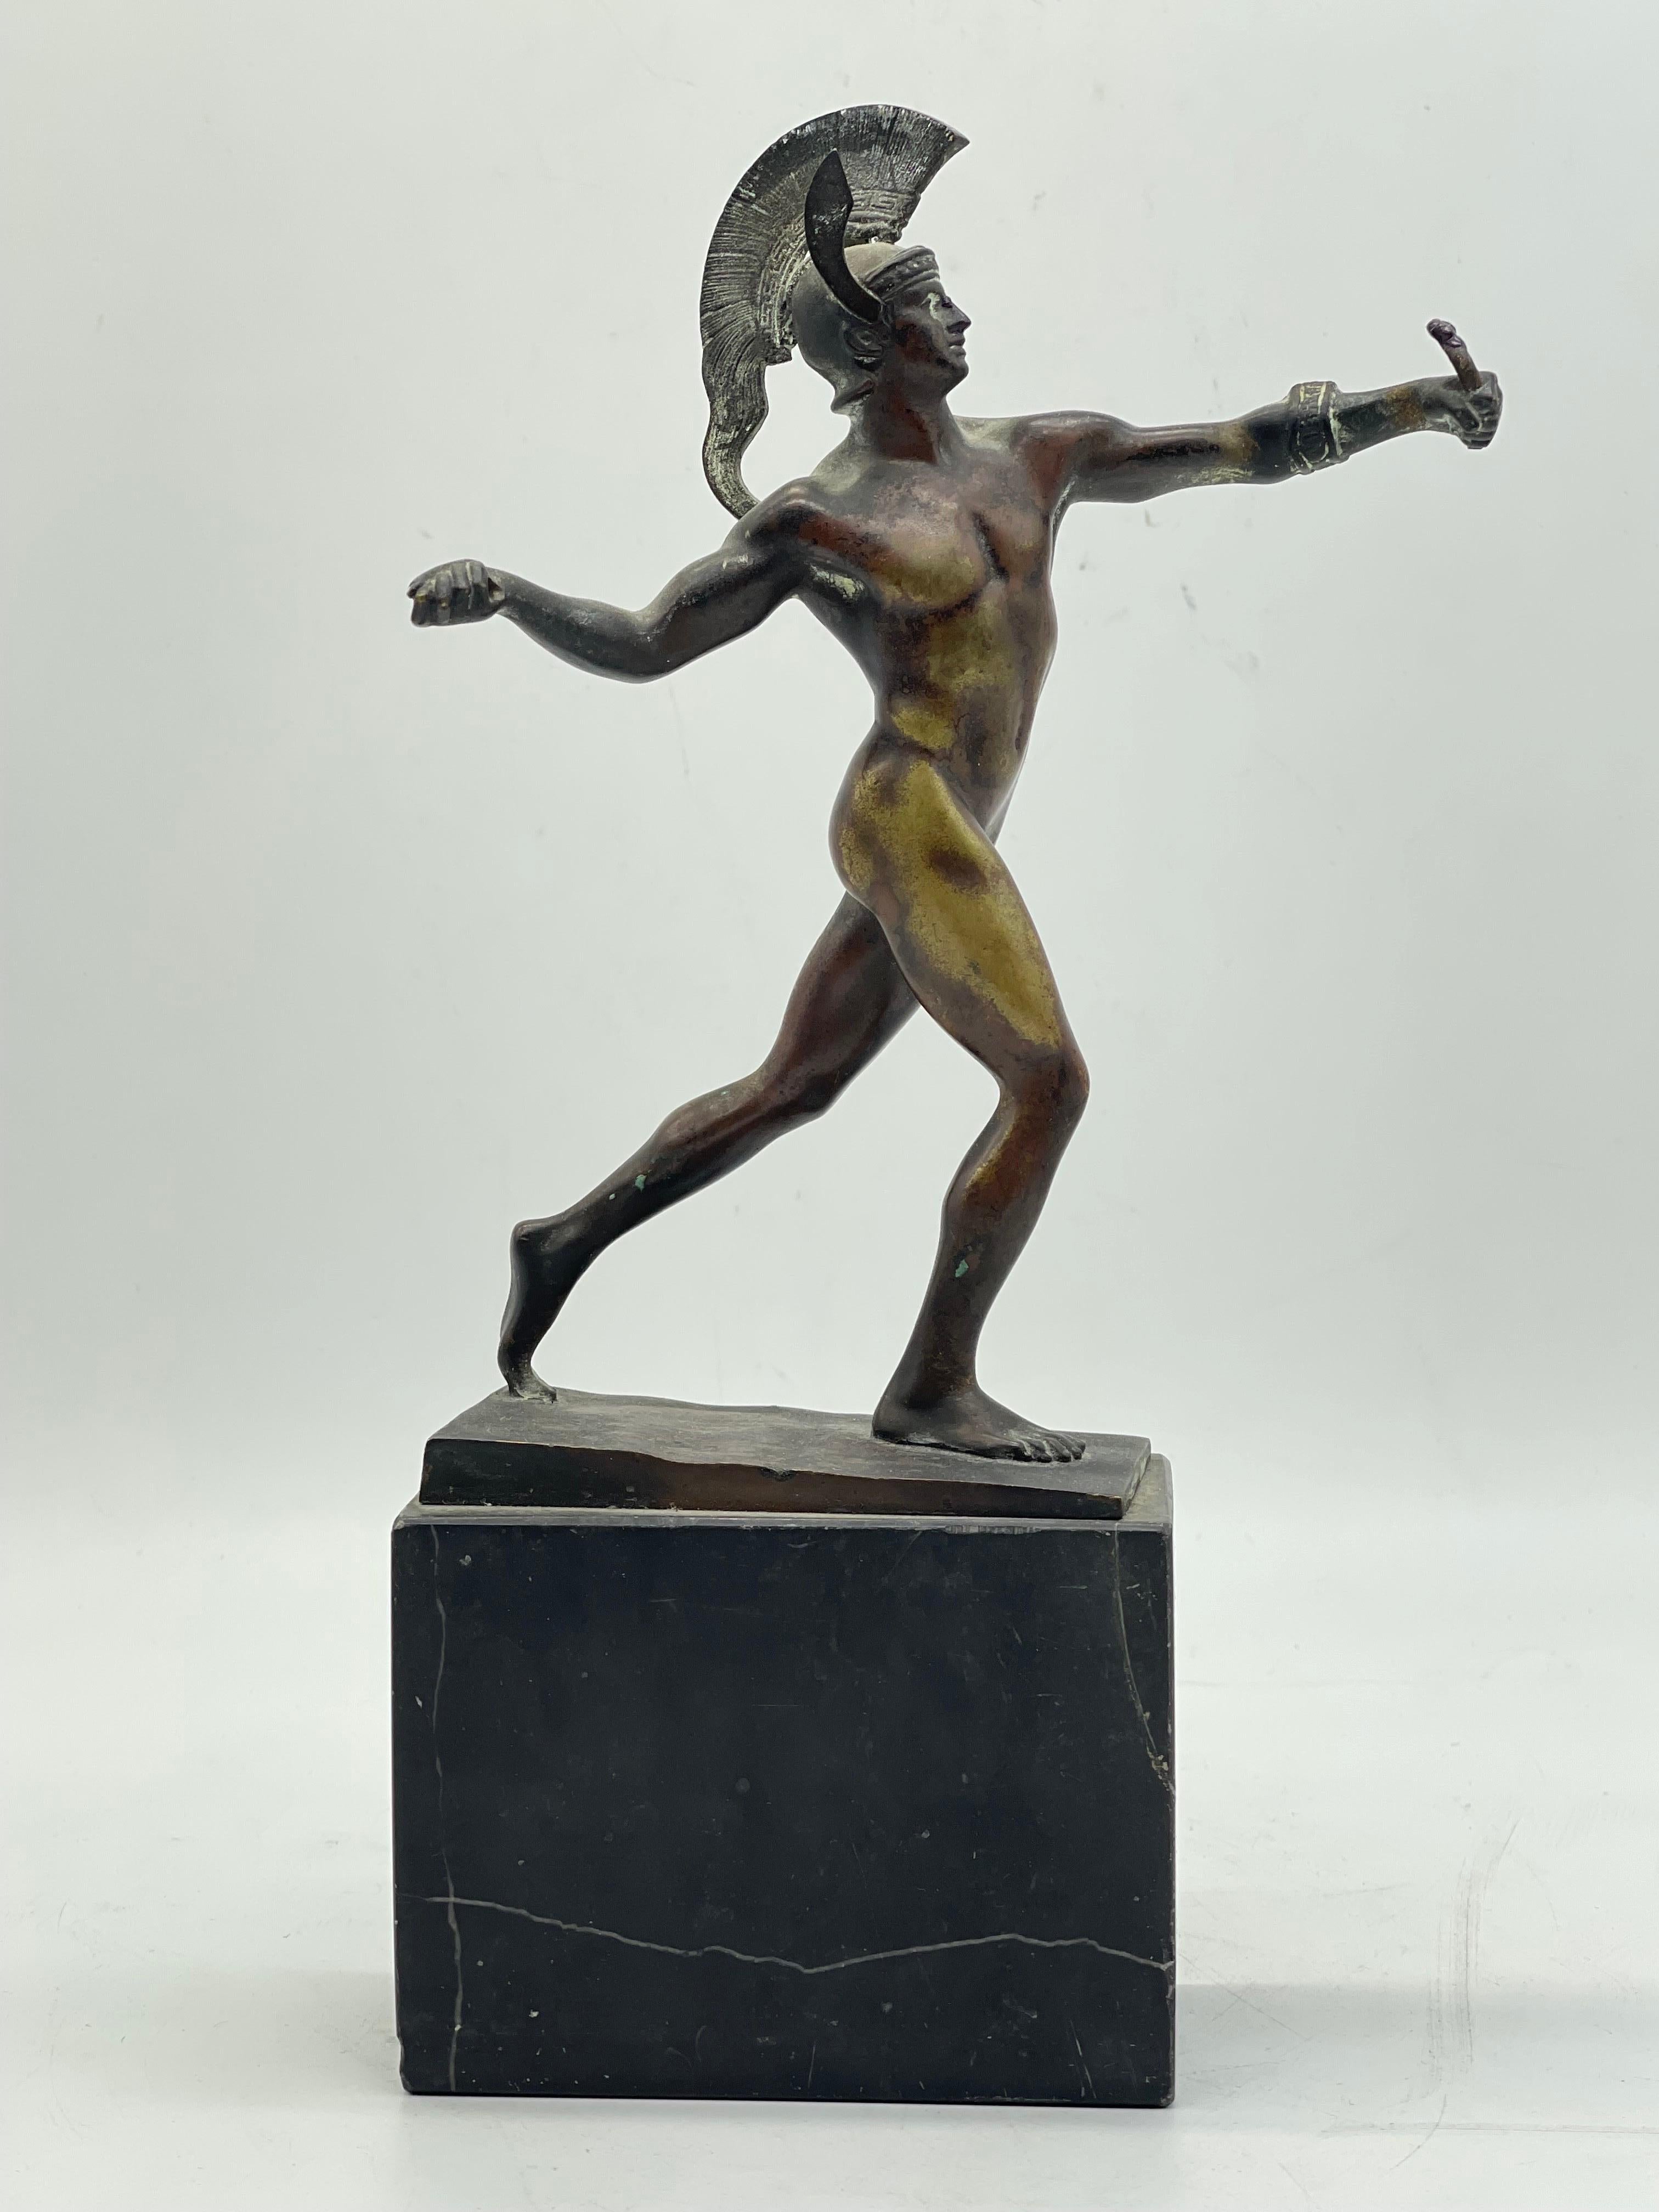 Antike Athletische griechische Bronze Krieger Skulptur / Figur

Leider fehlen offensichtlich ein Speer und ein Schild.

Auf schwarzem Marmorsockel

Der Zustand ist auf den Bildern zu sehen.